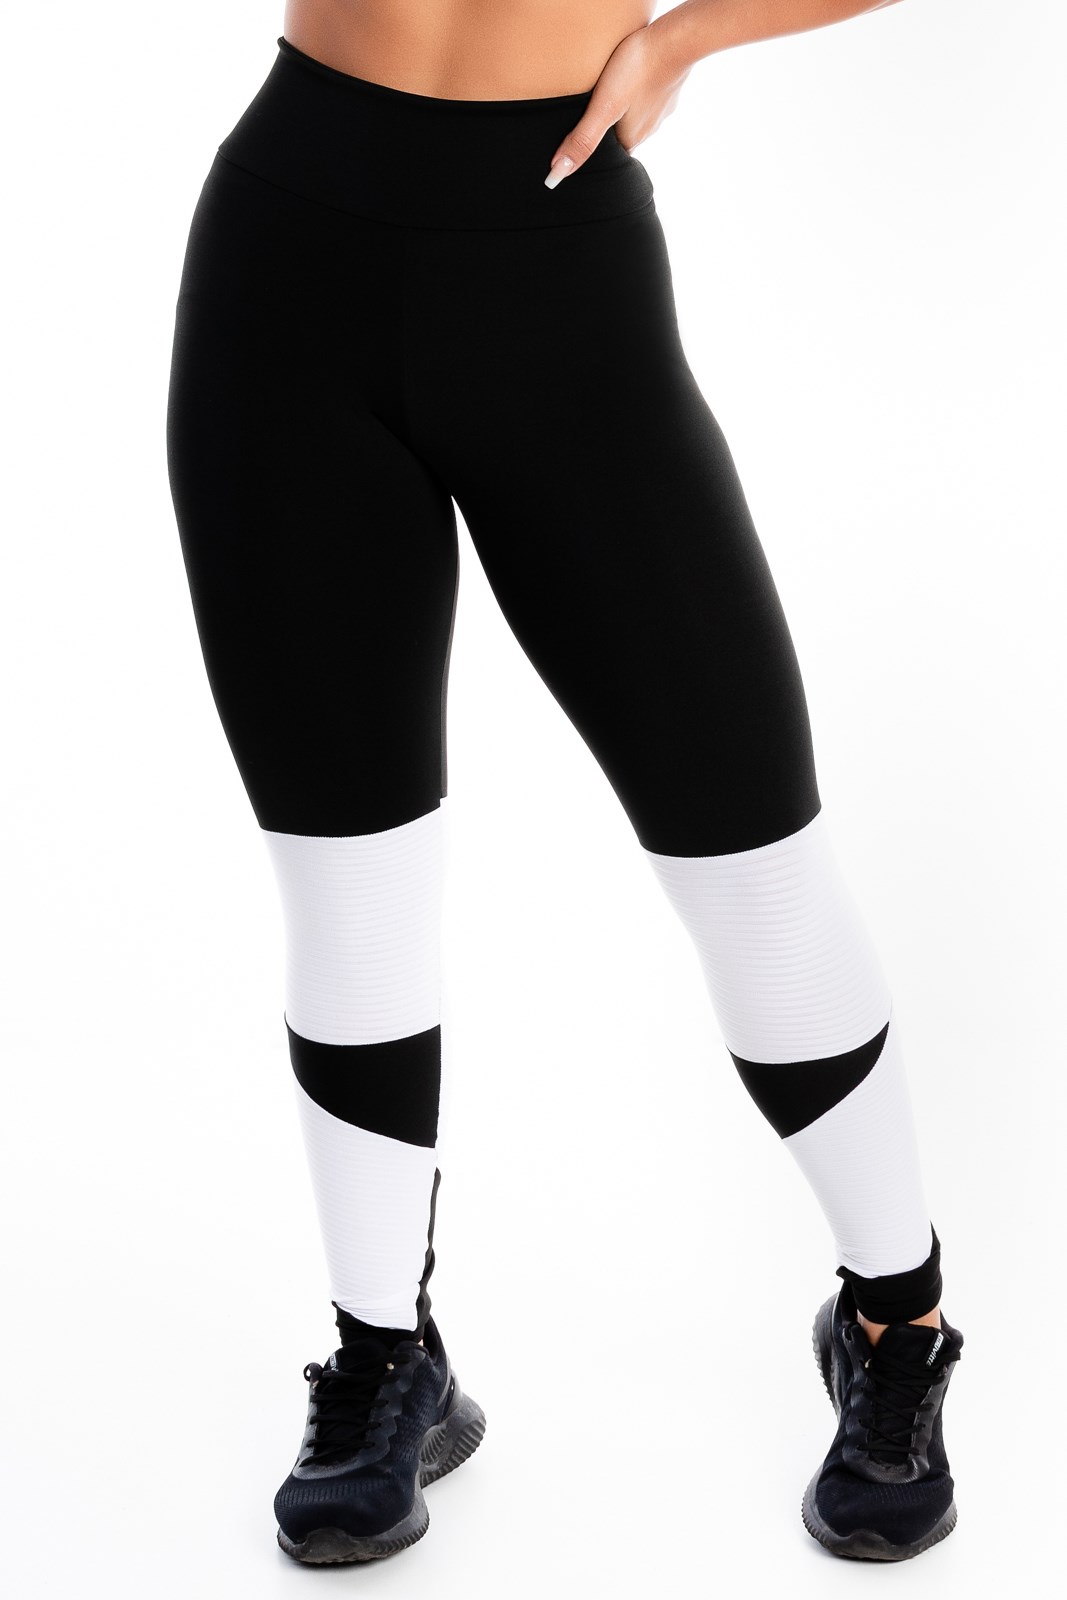 Conjunto Fitness Feminino Calça Legging Preta Com Detalhe em Vivo Branco  Cintura Alta e Cropped Regata Academia REF: CSV19